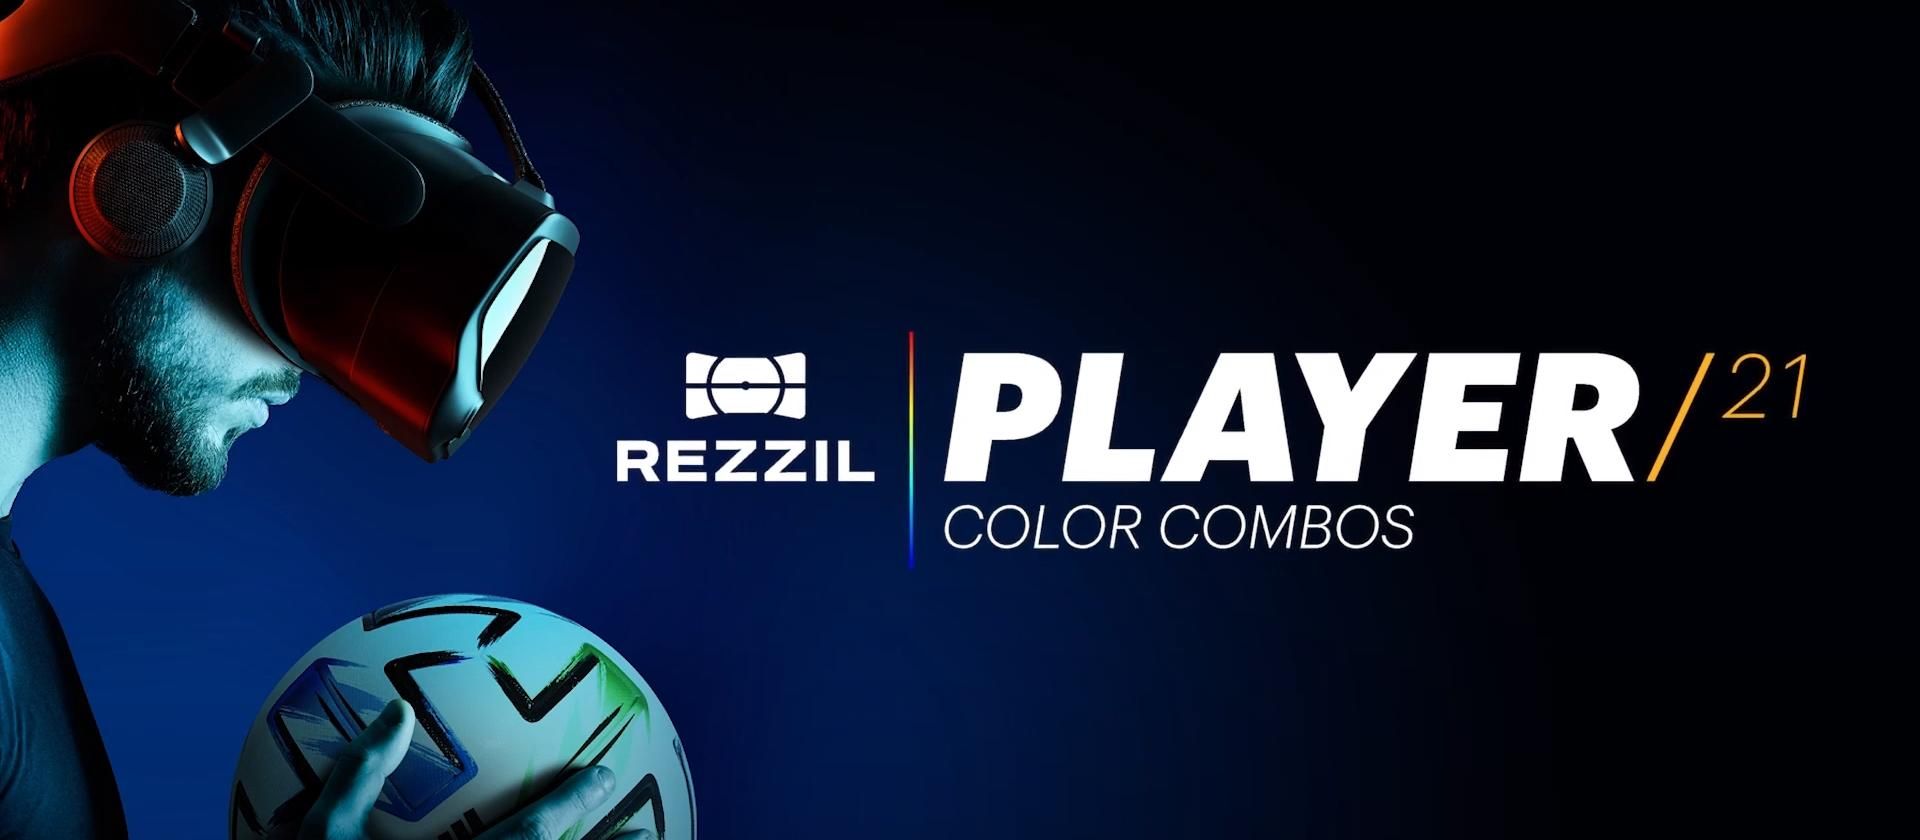 Rezzil навчить футболу у віртуальній реальності